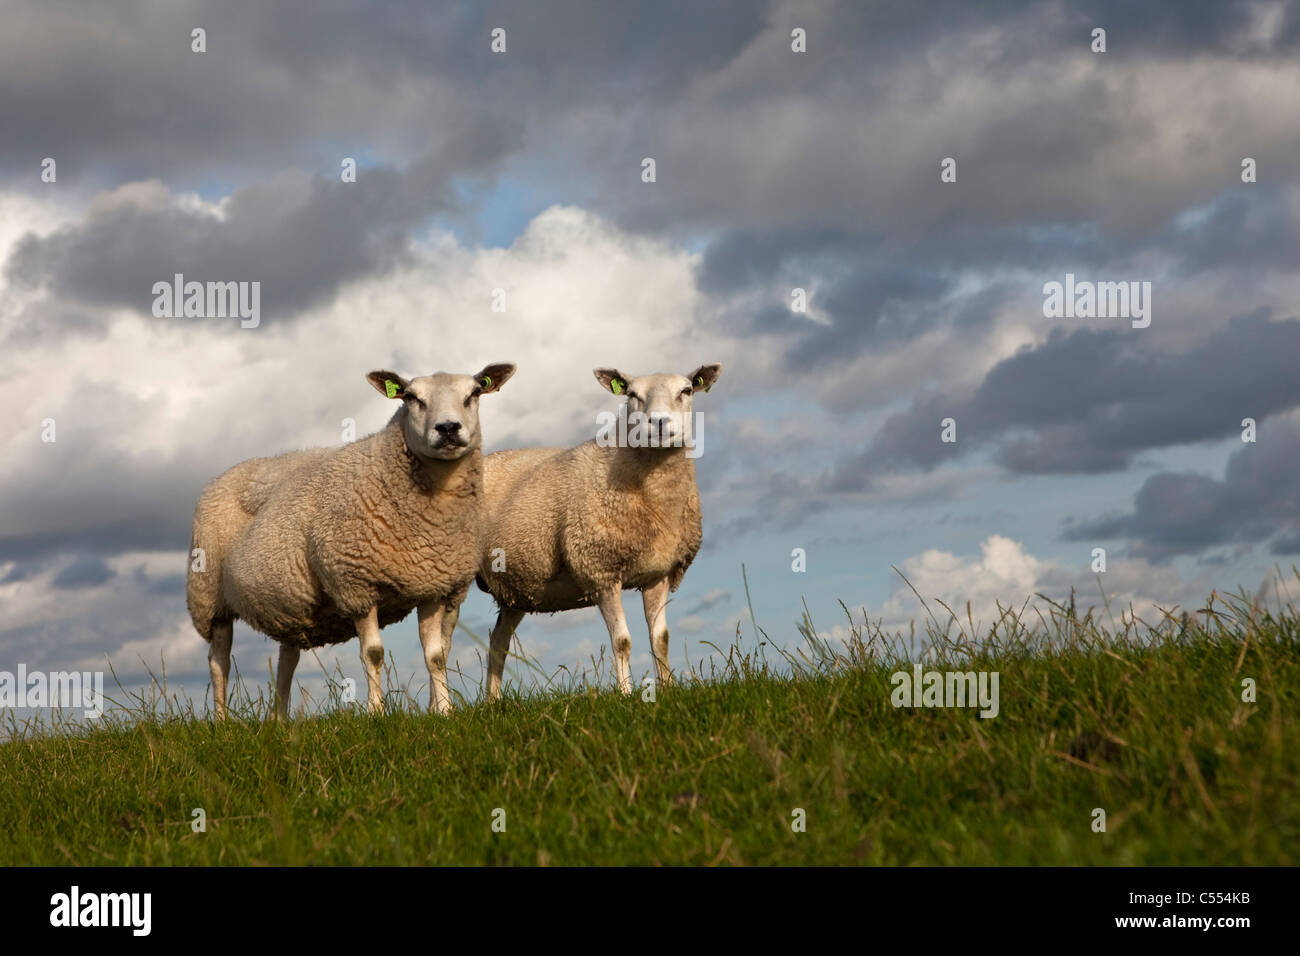 Les Pays-Bas, Hollum Ameland sur l'Île, appartenant à des îles de la mer des Wadden. Unesco World Heritage Site. Moutons sur la digue. Banque D'Images